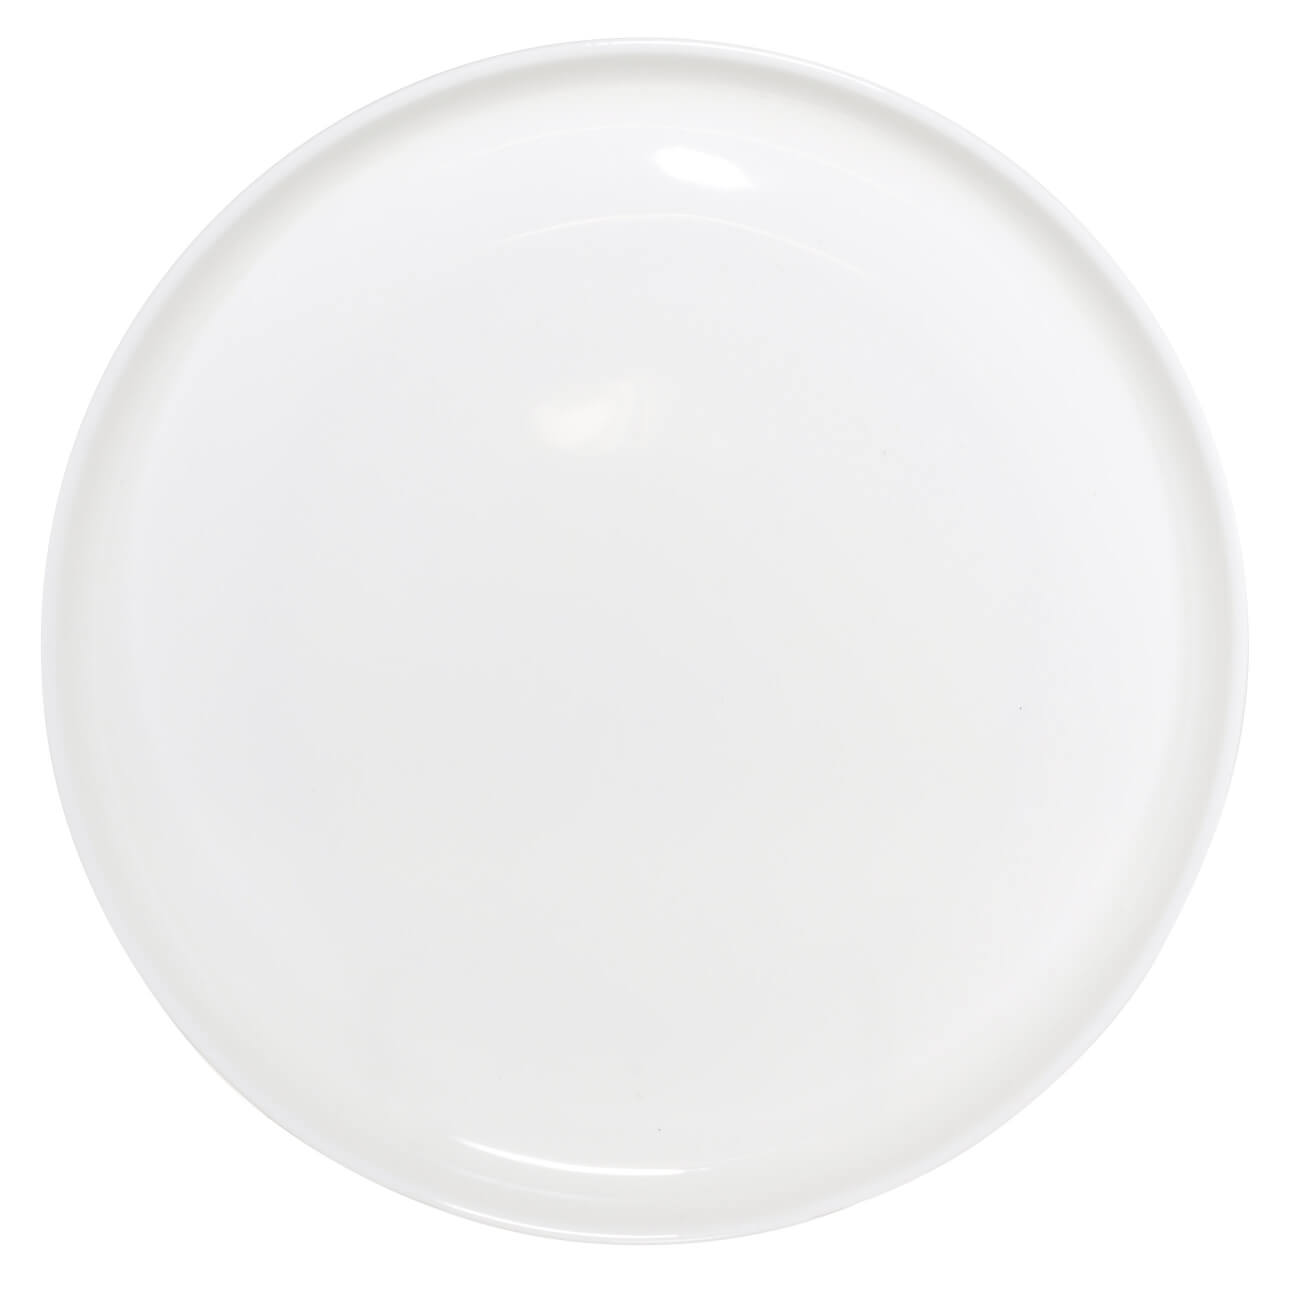 Тарелка обеденная, 26 см, фарфор F, белая, Ideal white обеденная группа чепецкая мф франц ii эмаль белая бодега белая